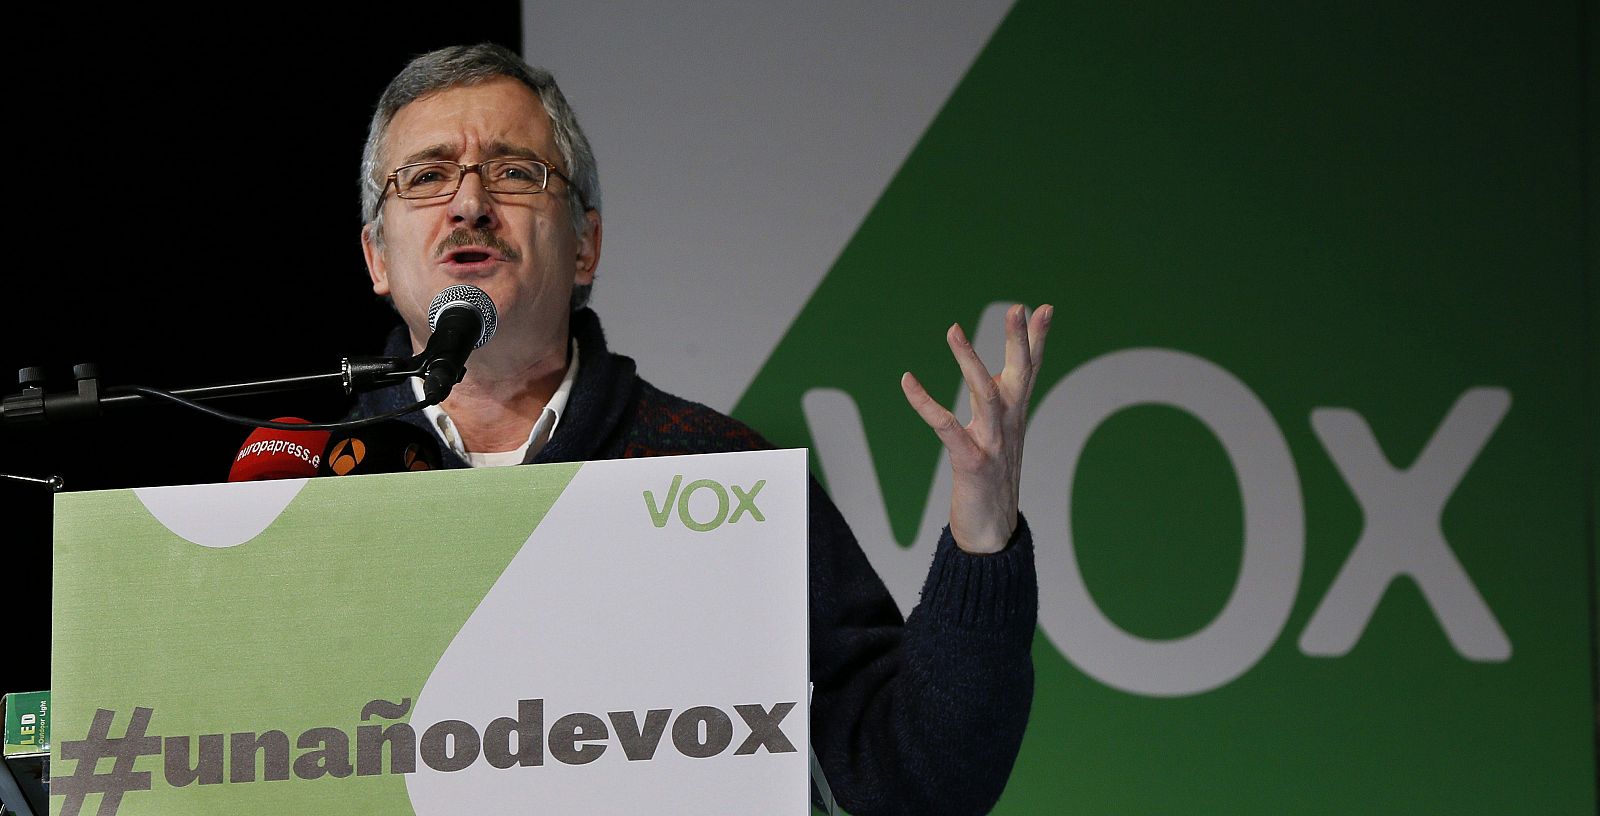 José Antonio Ortega Lara interviene en el primer aniversario de VOX